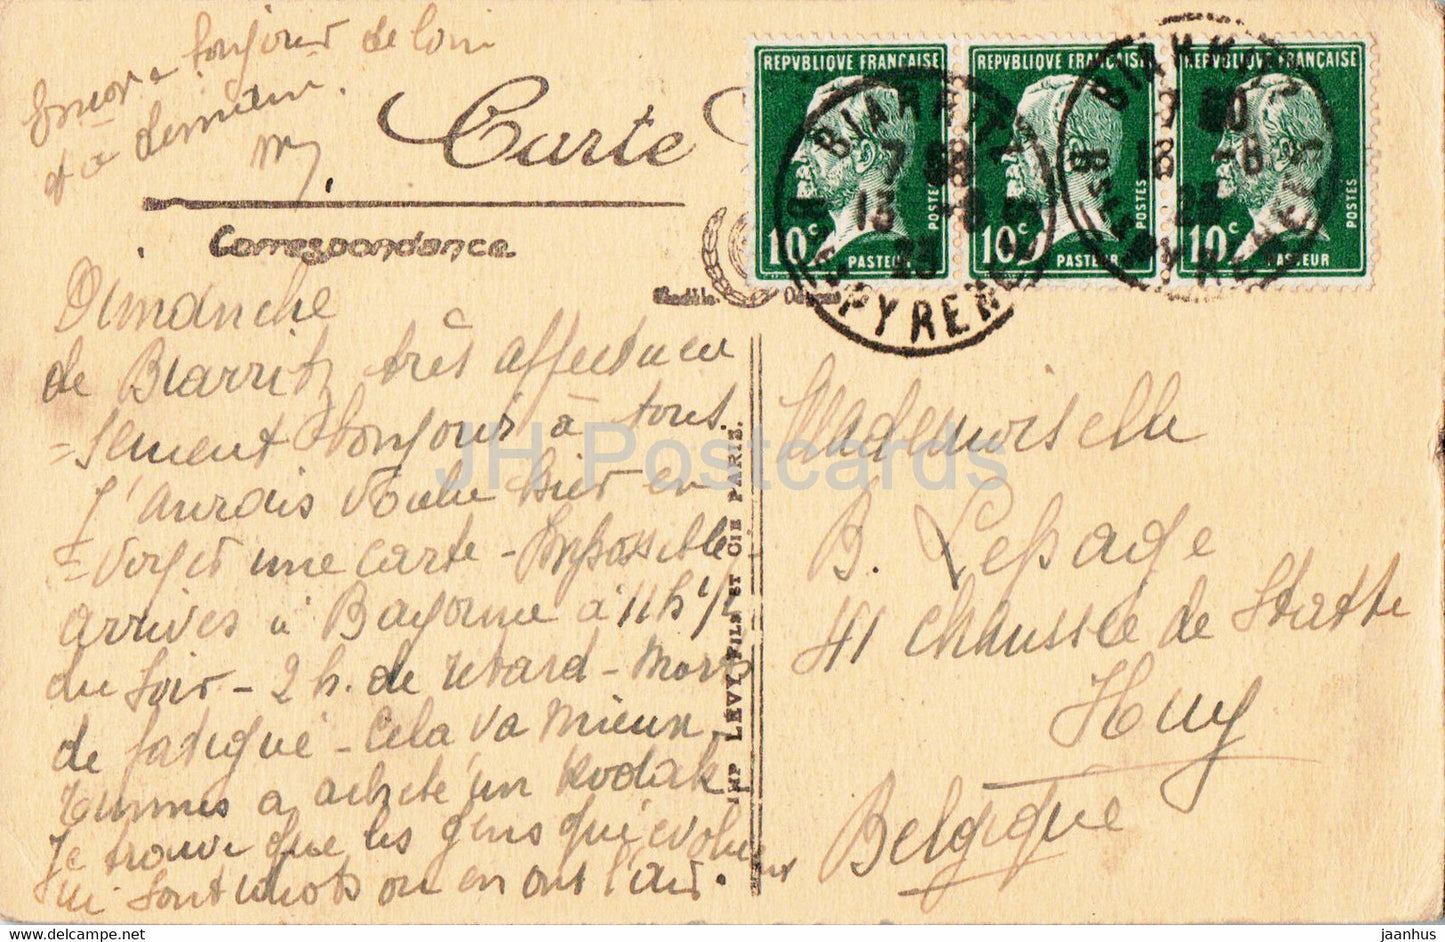 Biarritz - Effet de Vagues au Rocher de la Vierge - 398 - old postcard - 1923 - France - used